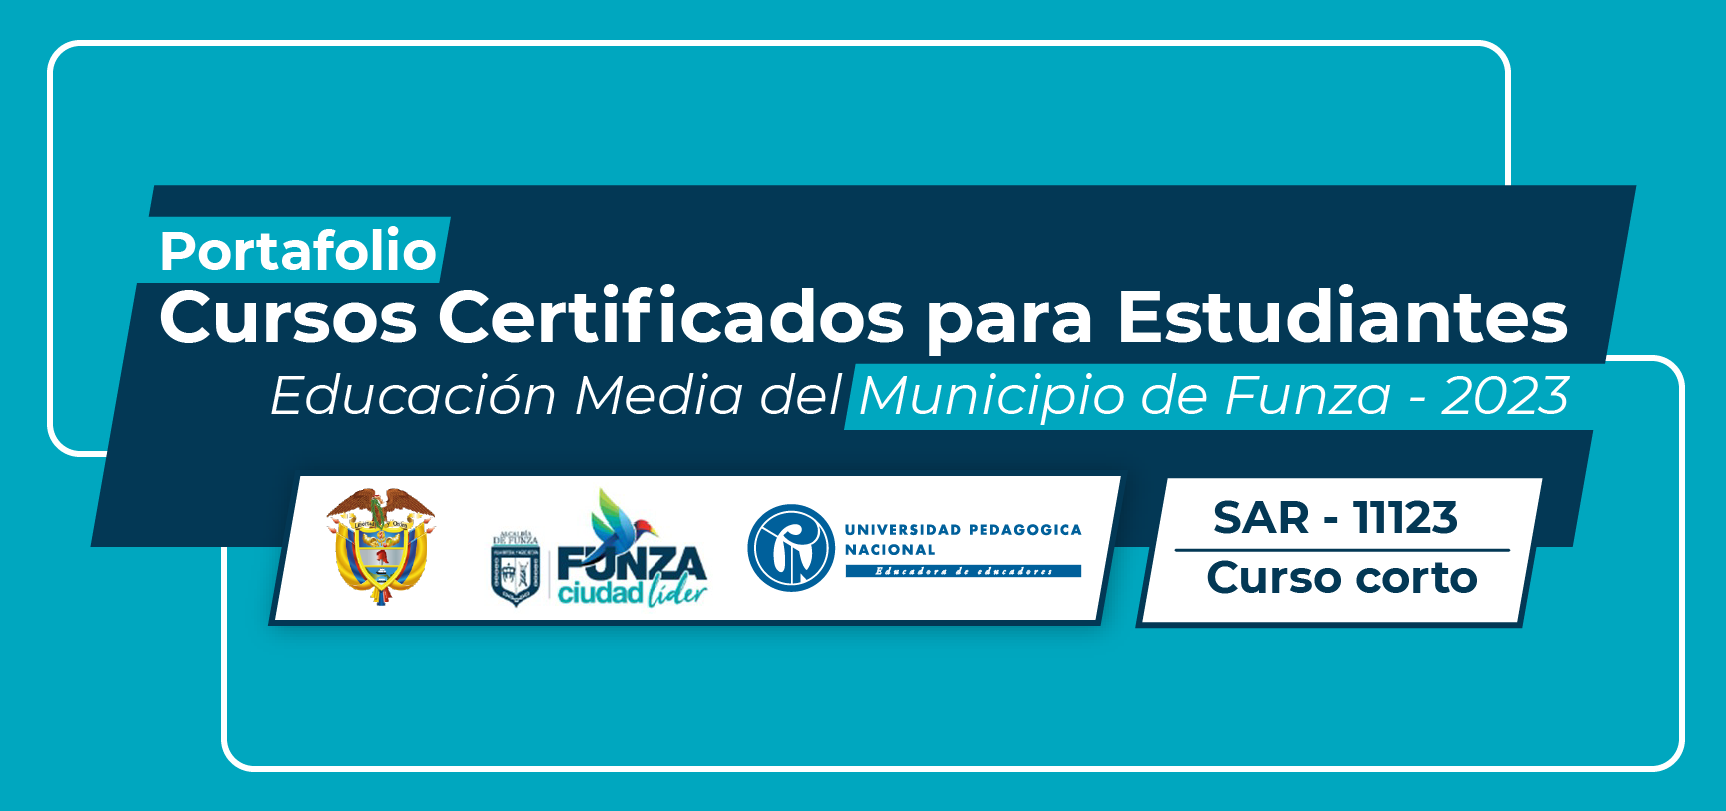 SAR11123 Portafolio de Cursos Certificados para Estudiantes de Educación Media del Municipio de Funza 2023